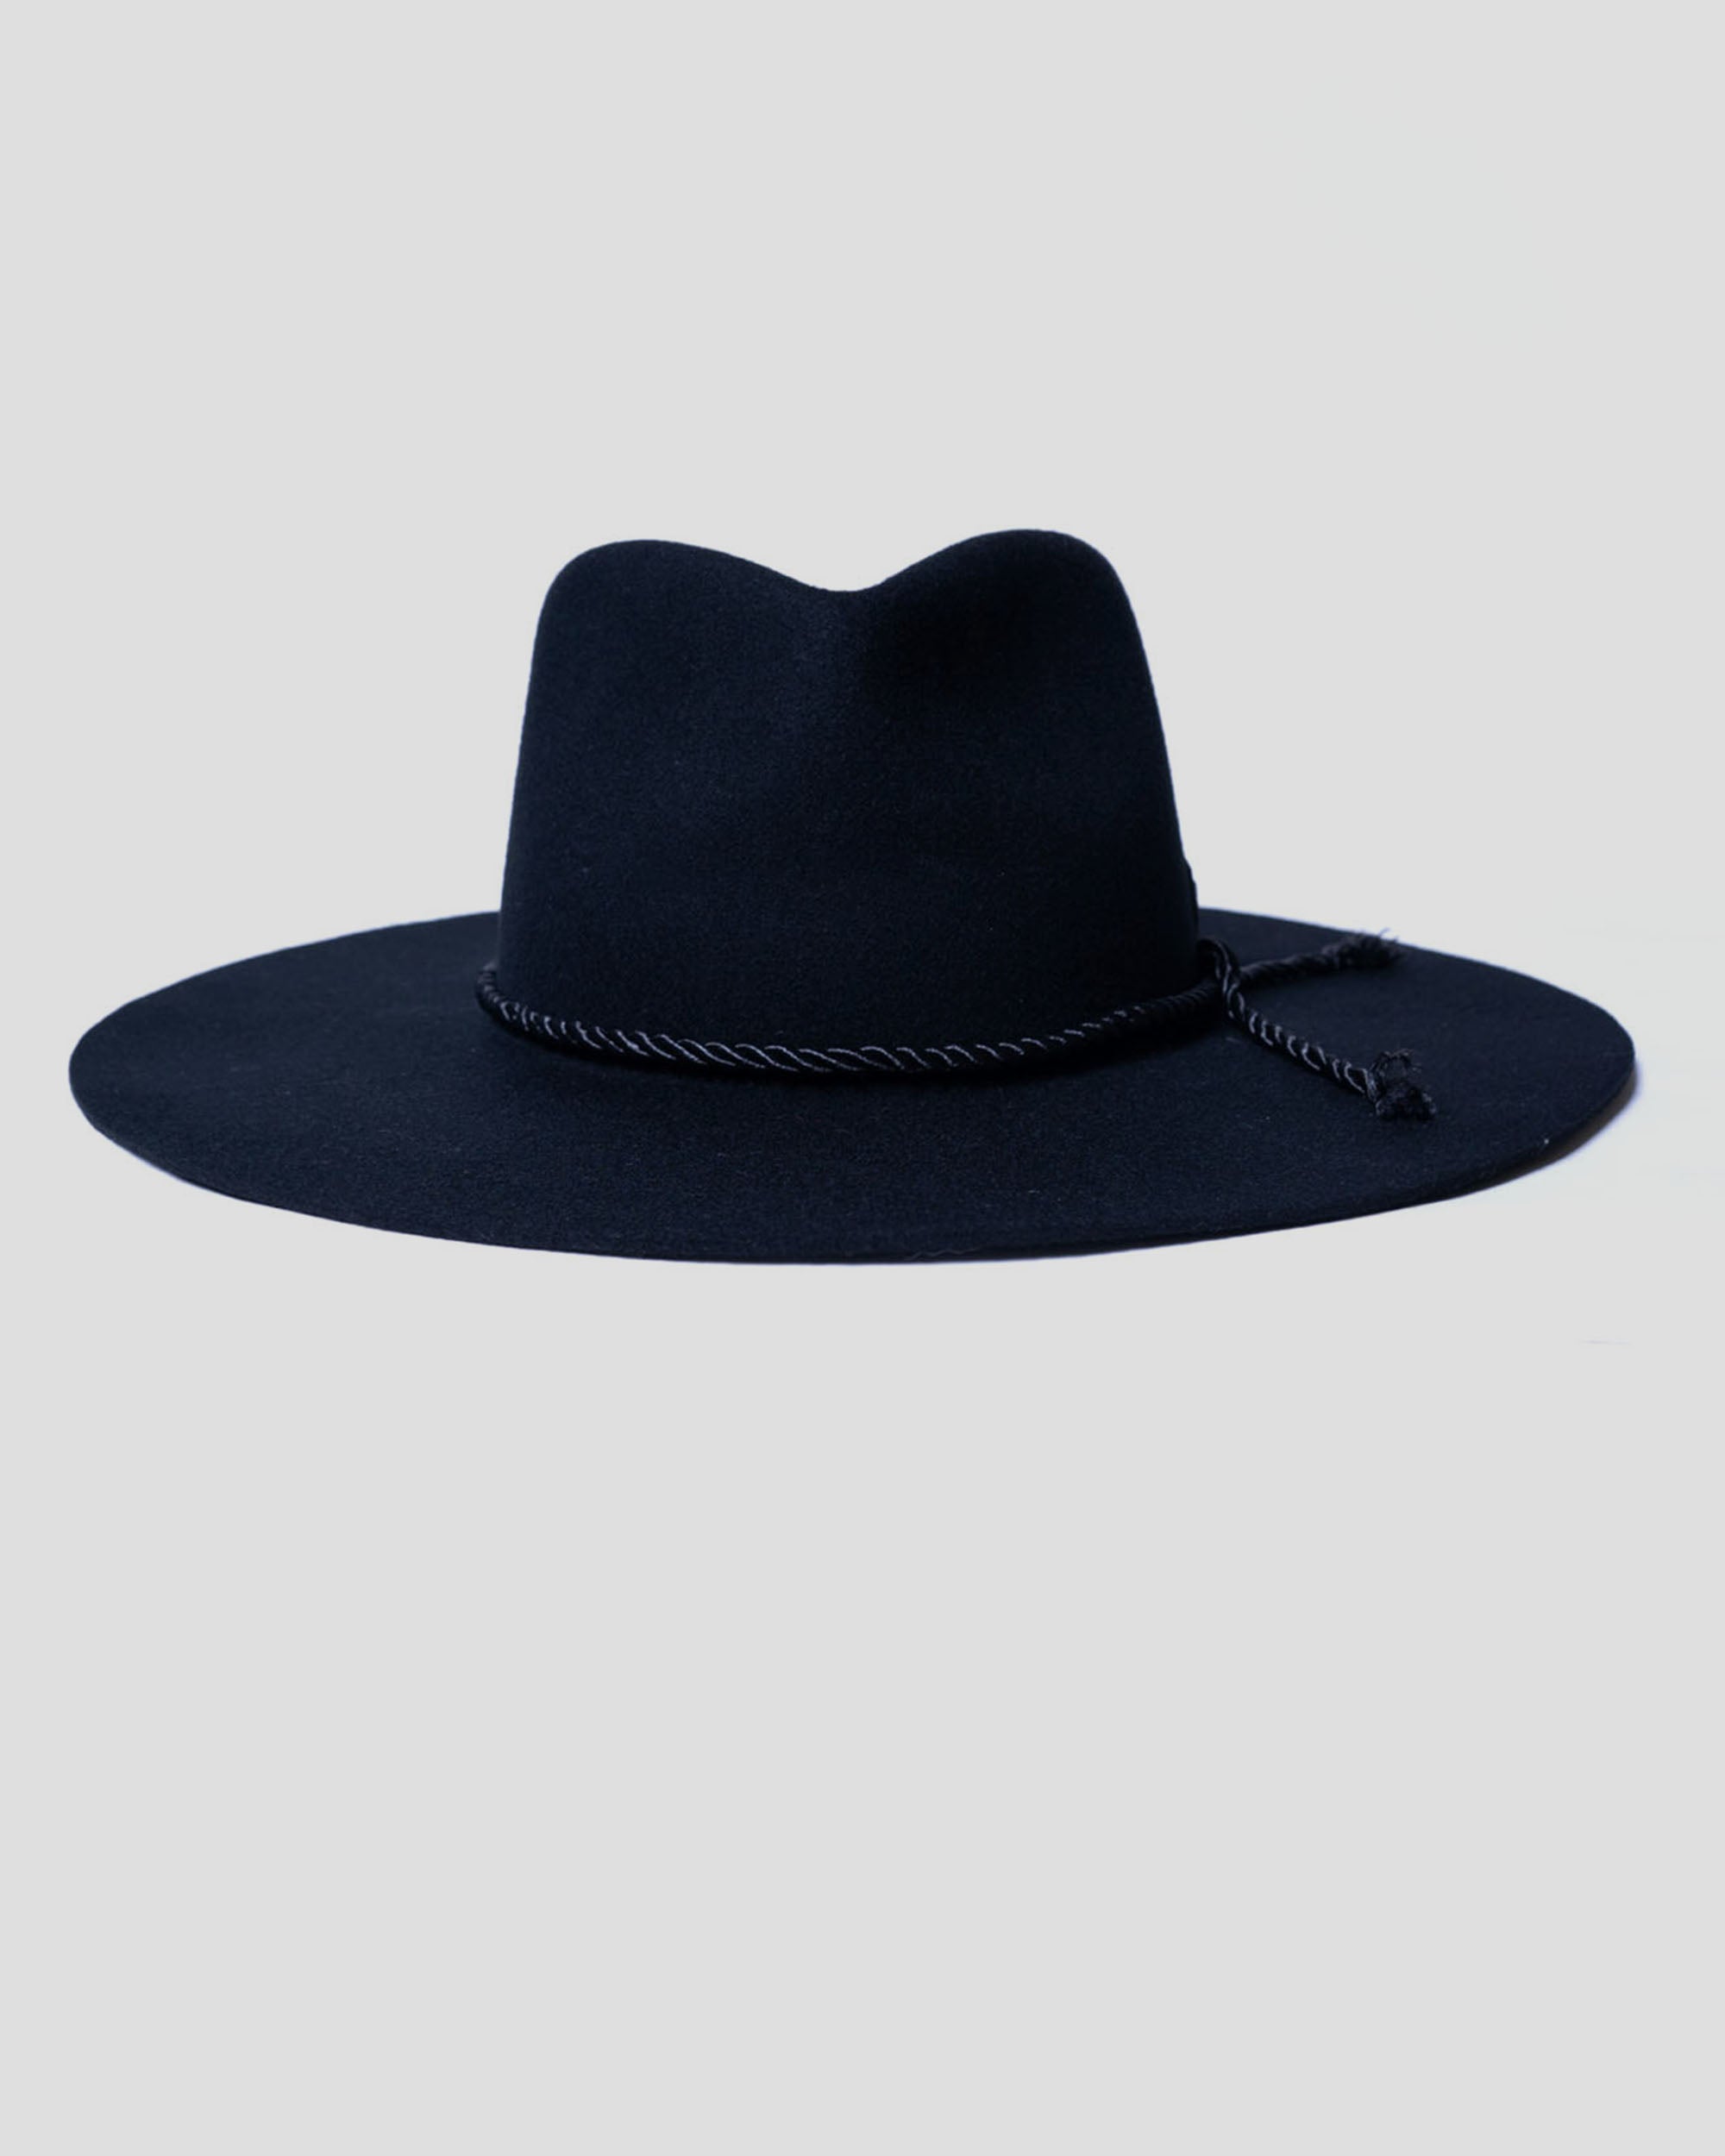 SG Alexander Fedora Hat - Black – Southern Gents